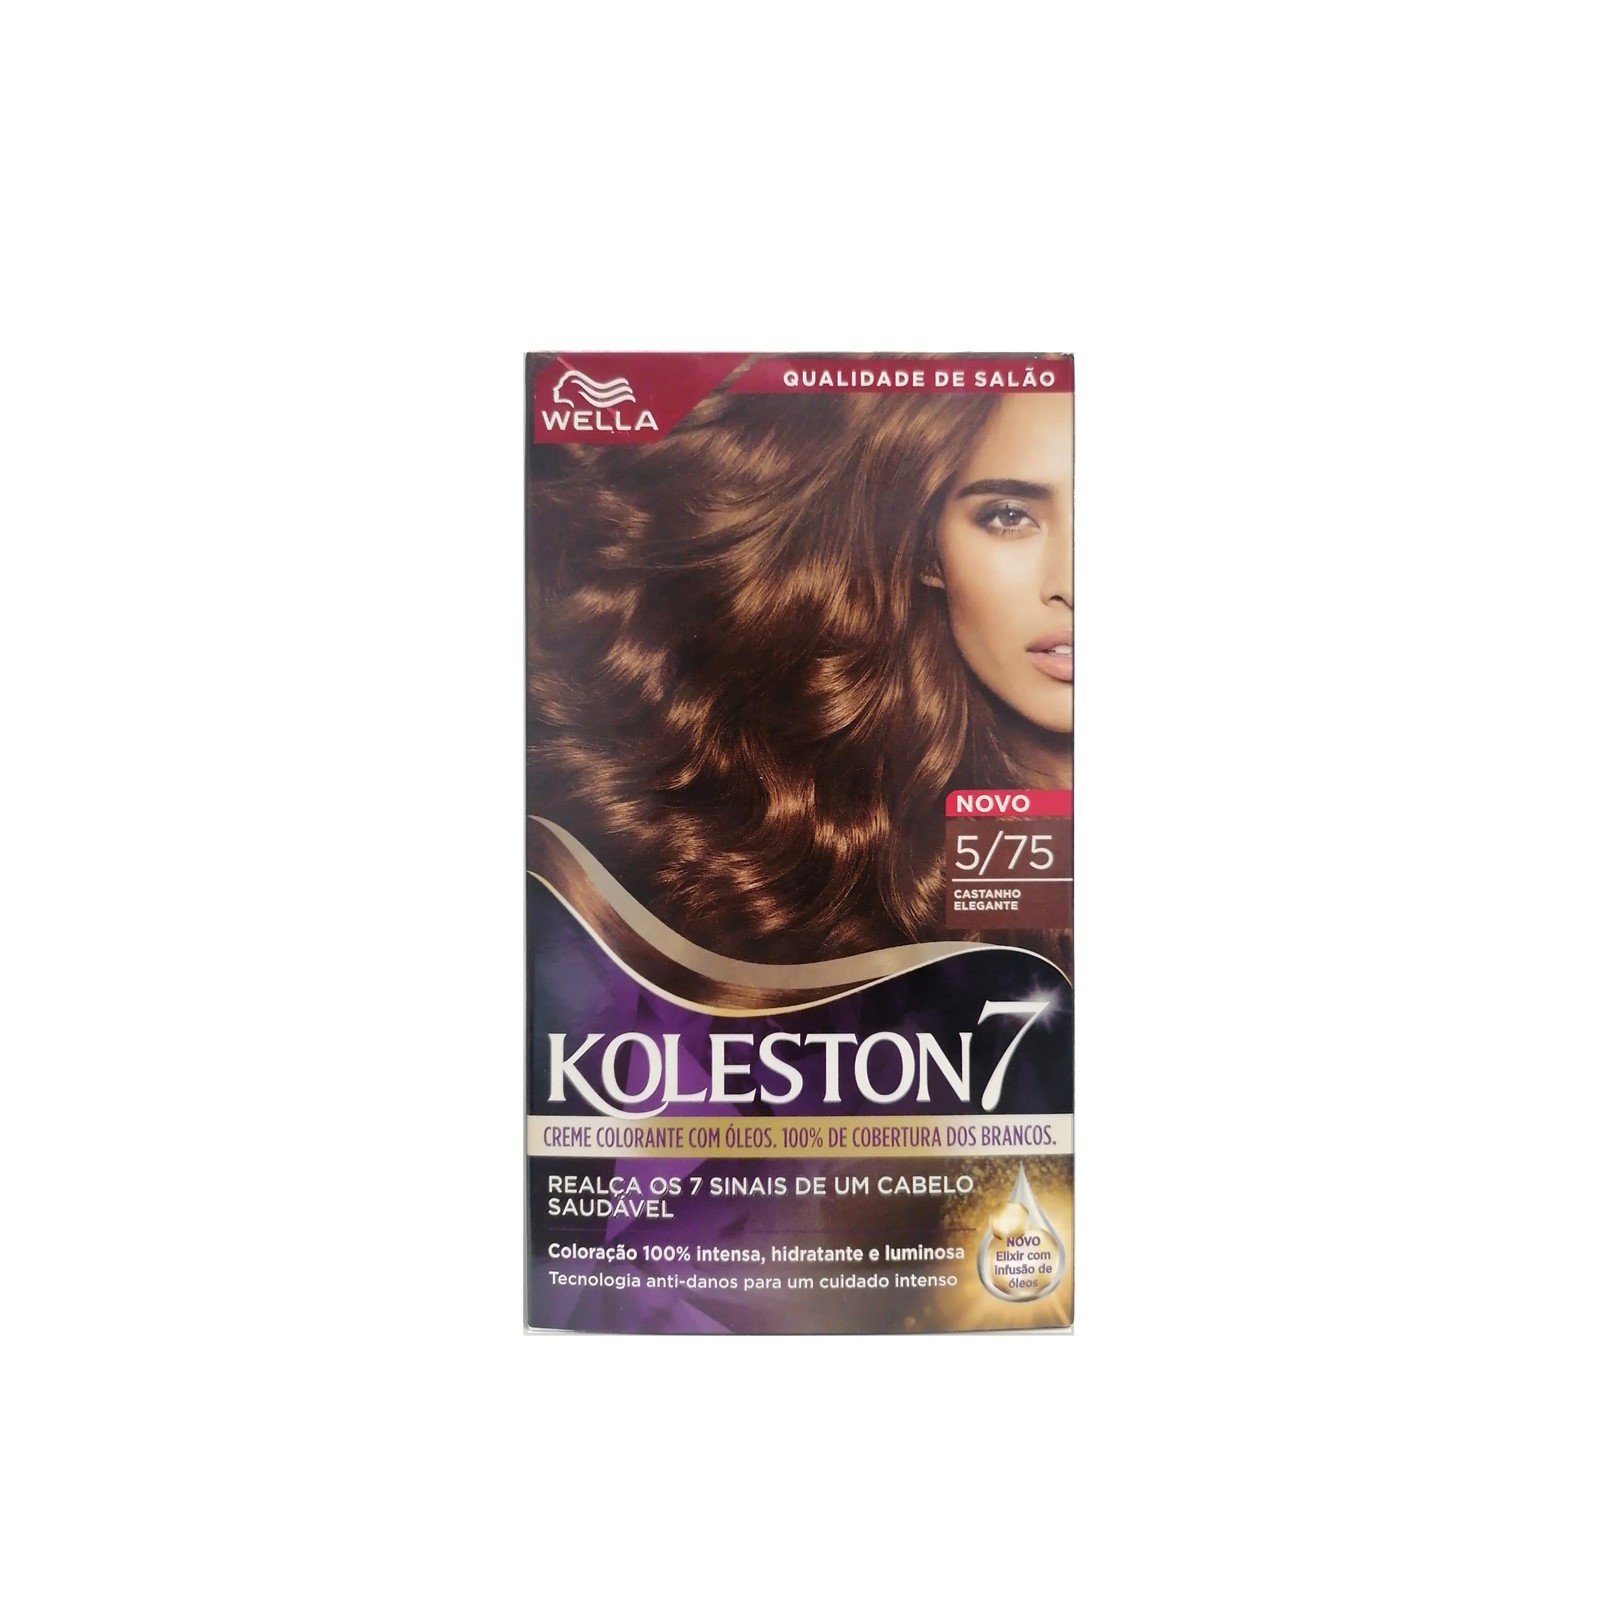 Buy Wella Koleston 7 5/75 Elegant Brown Permanent Hair Color · Afghanistan